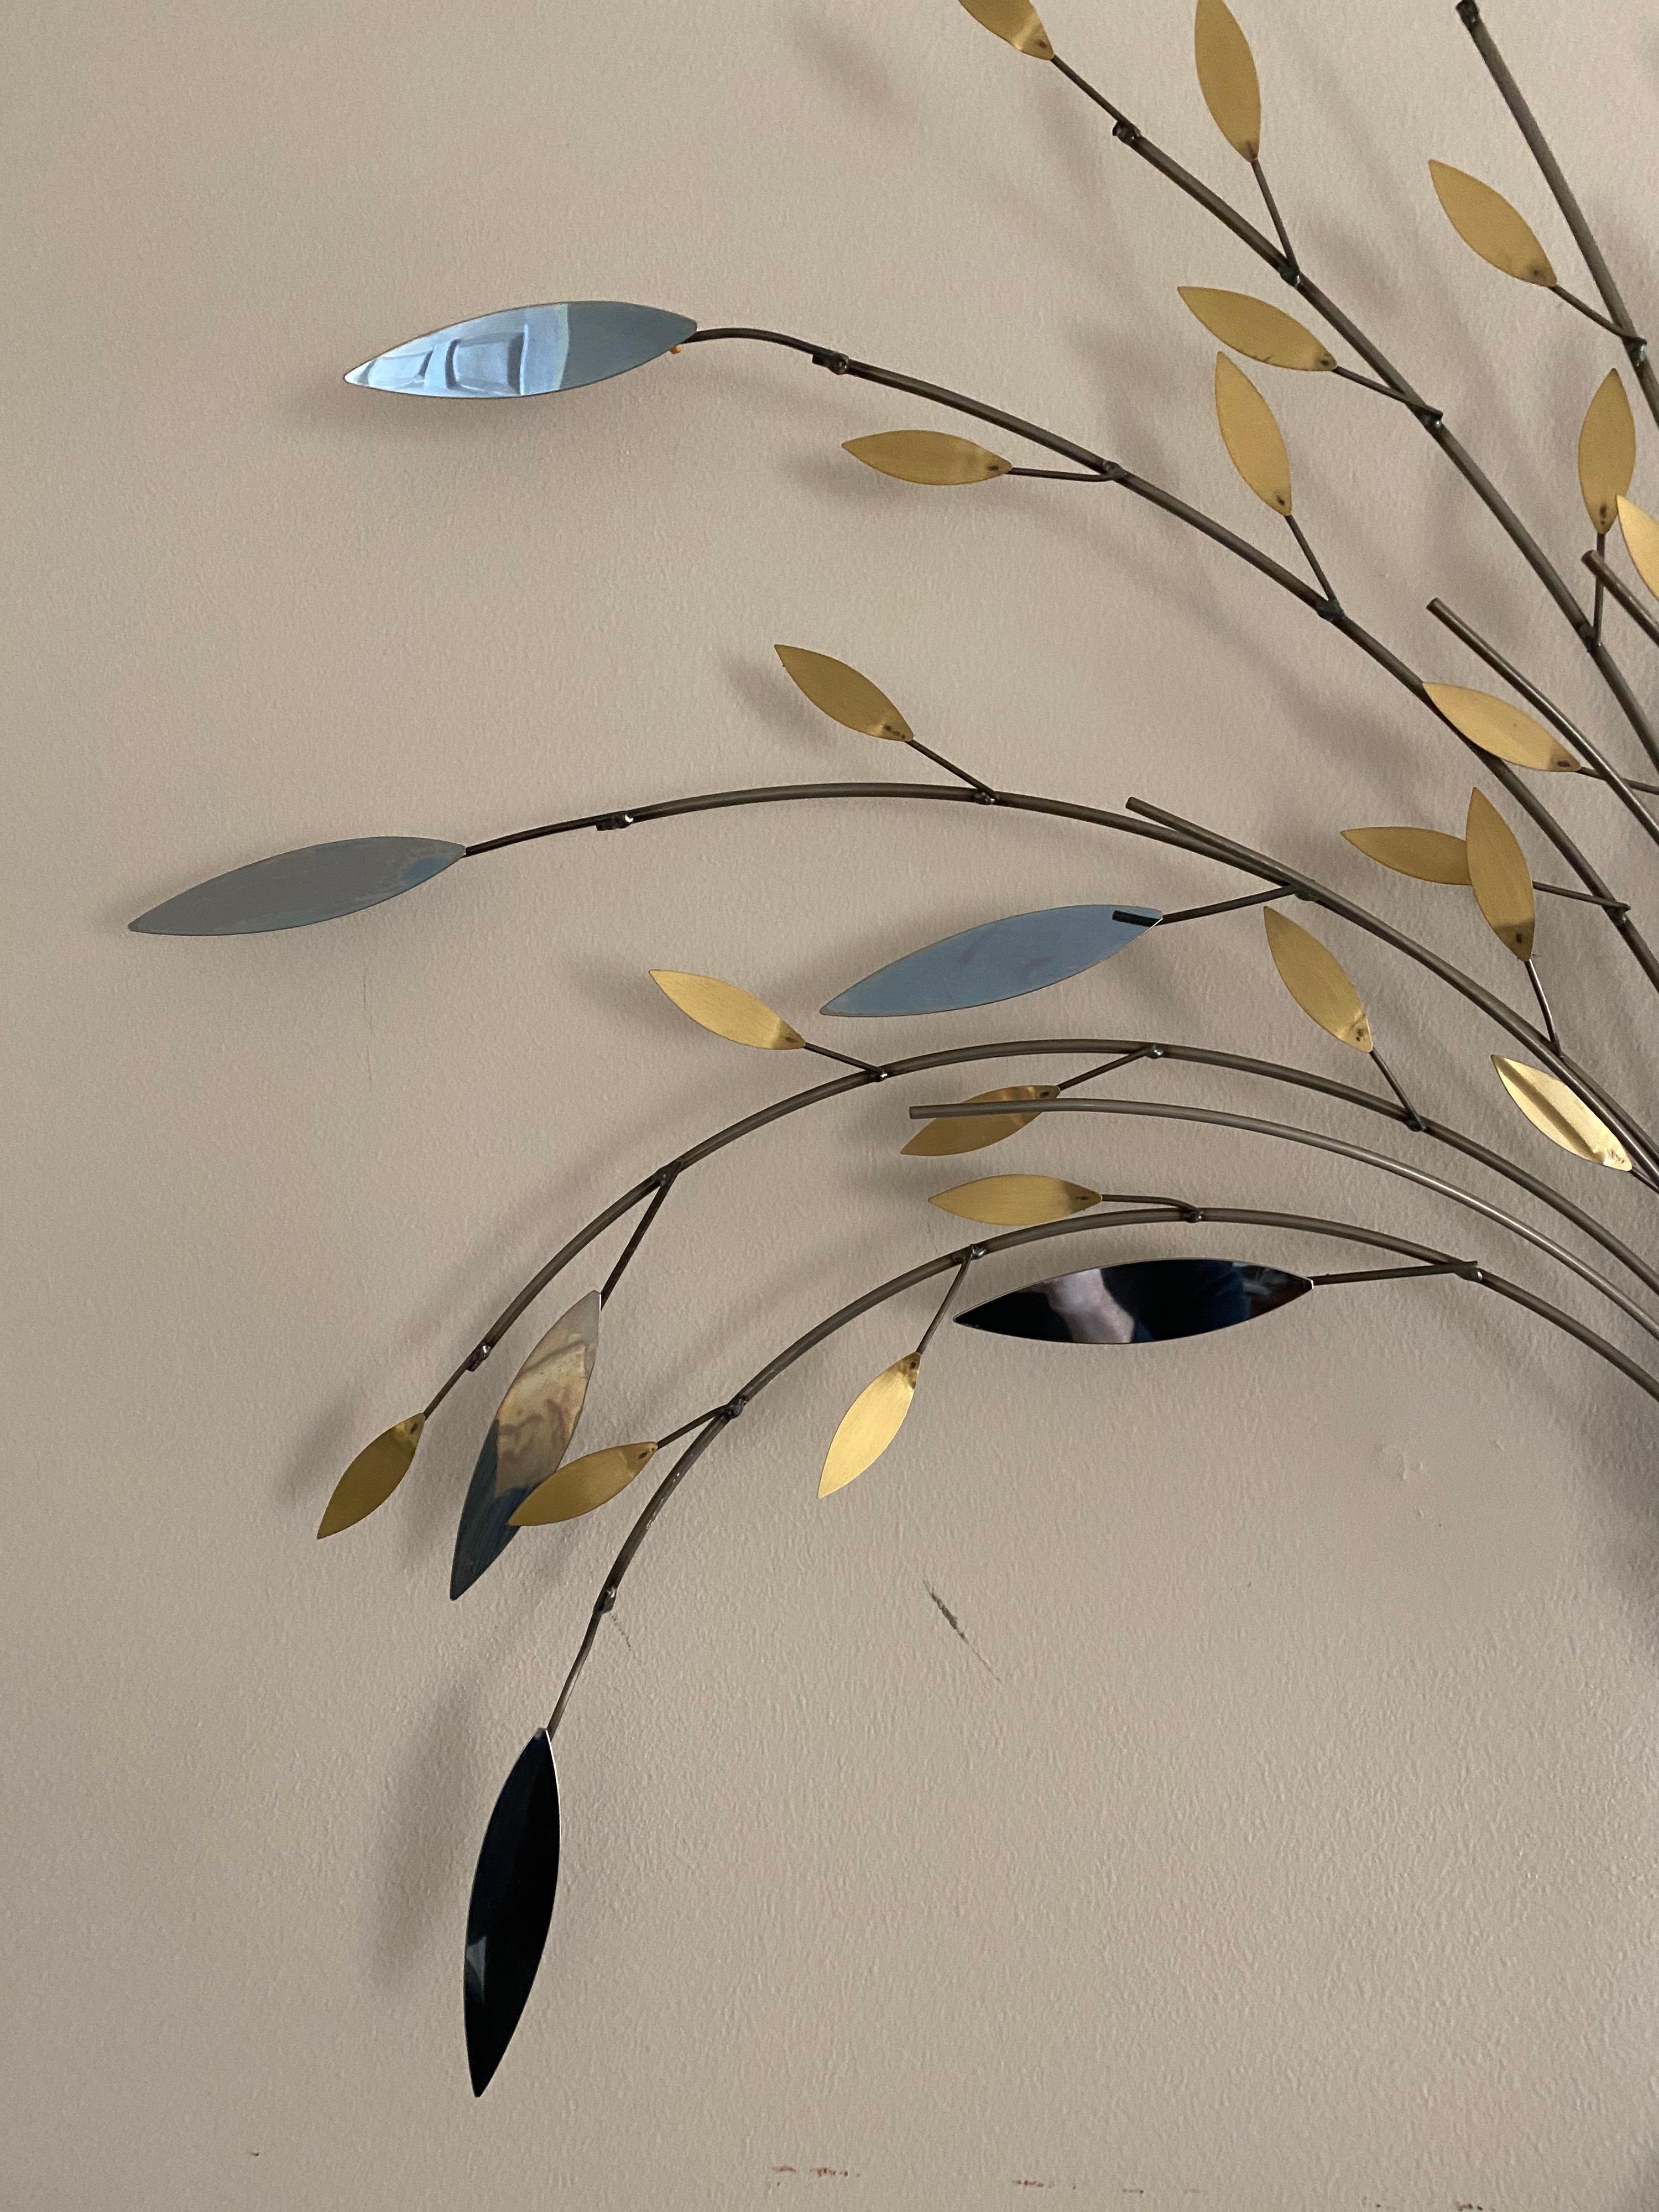 Curtis Jere Baum des Lebens Chrom und Messing skulpturale Metall Wand Skulptur. Das Arrangement besteht aus leichten und luftigen Zweigen mit reflektierenden, verspiegelten großen Blättern und messingfarbenen kleineren Blättern.

Unterzeichnet C